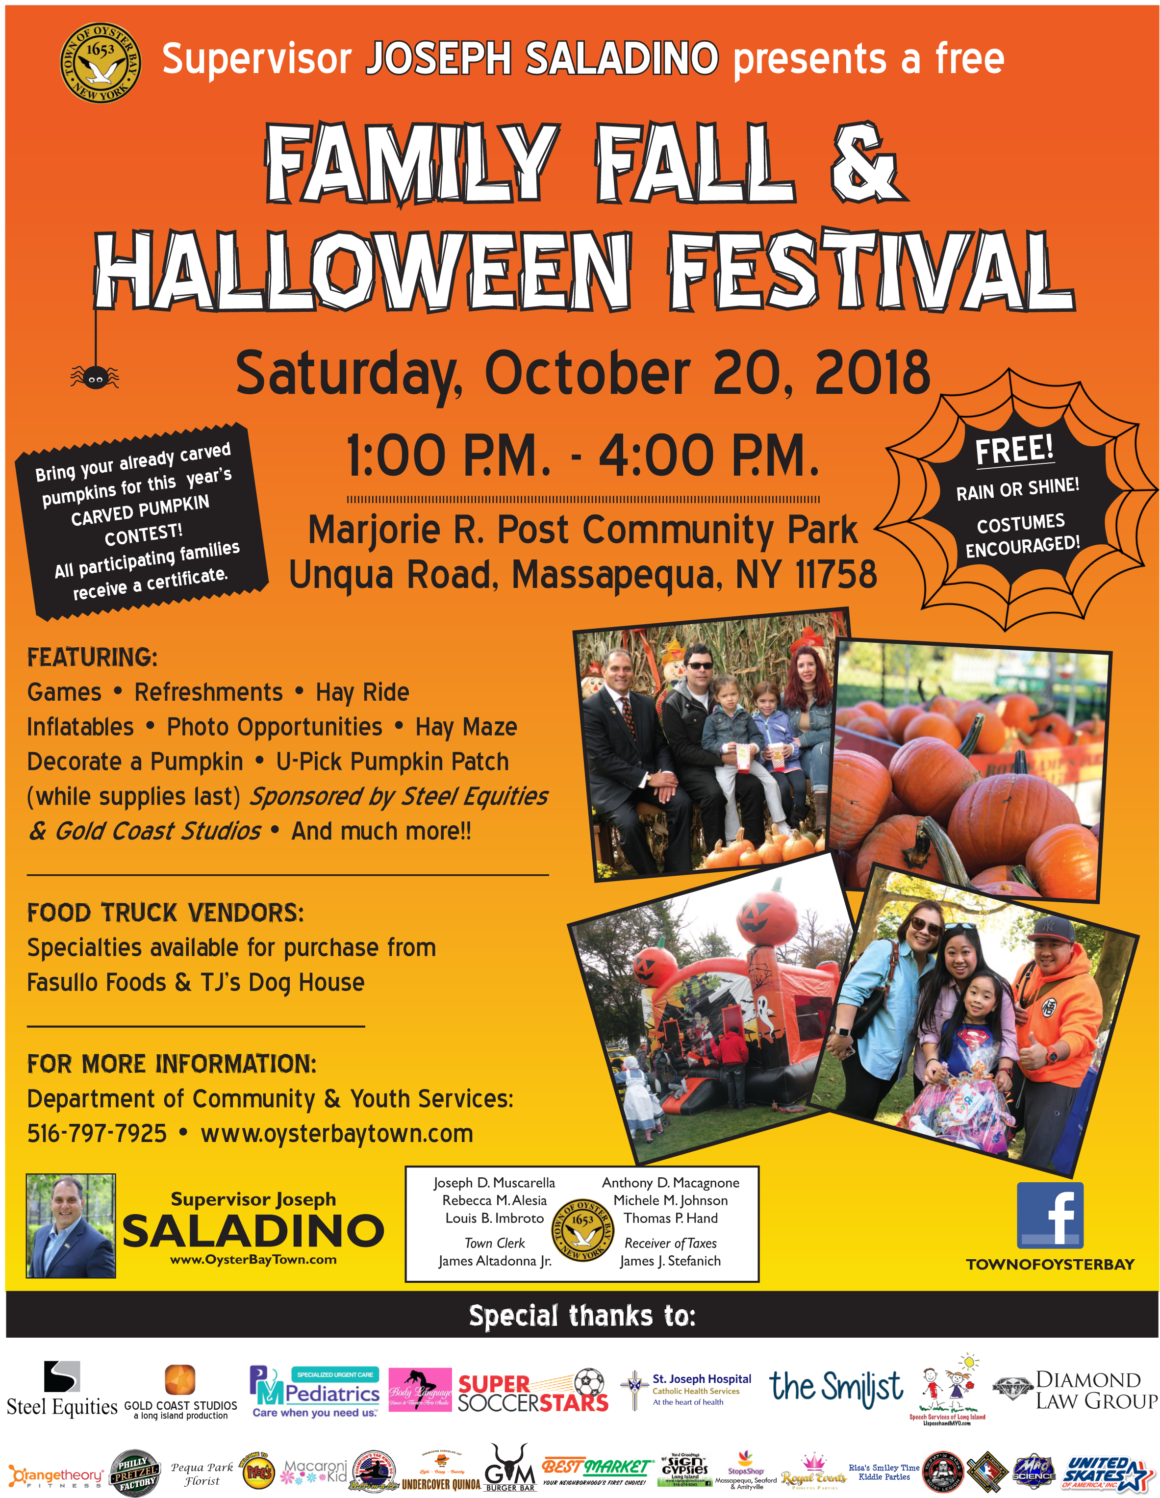 Saladino Invites Residents to Free Family Fall Halloween Festival